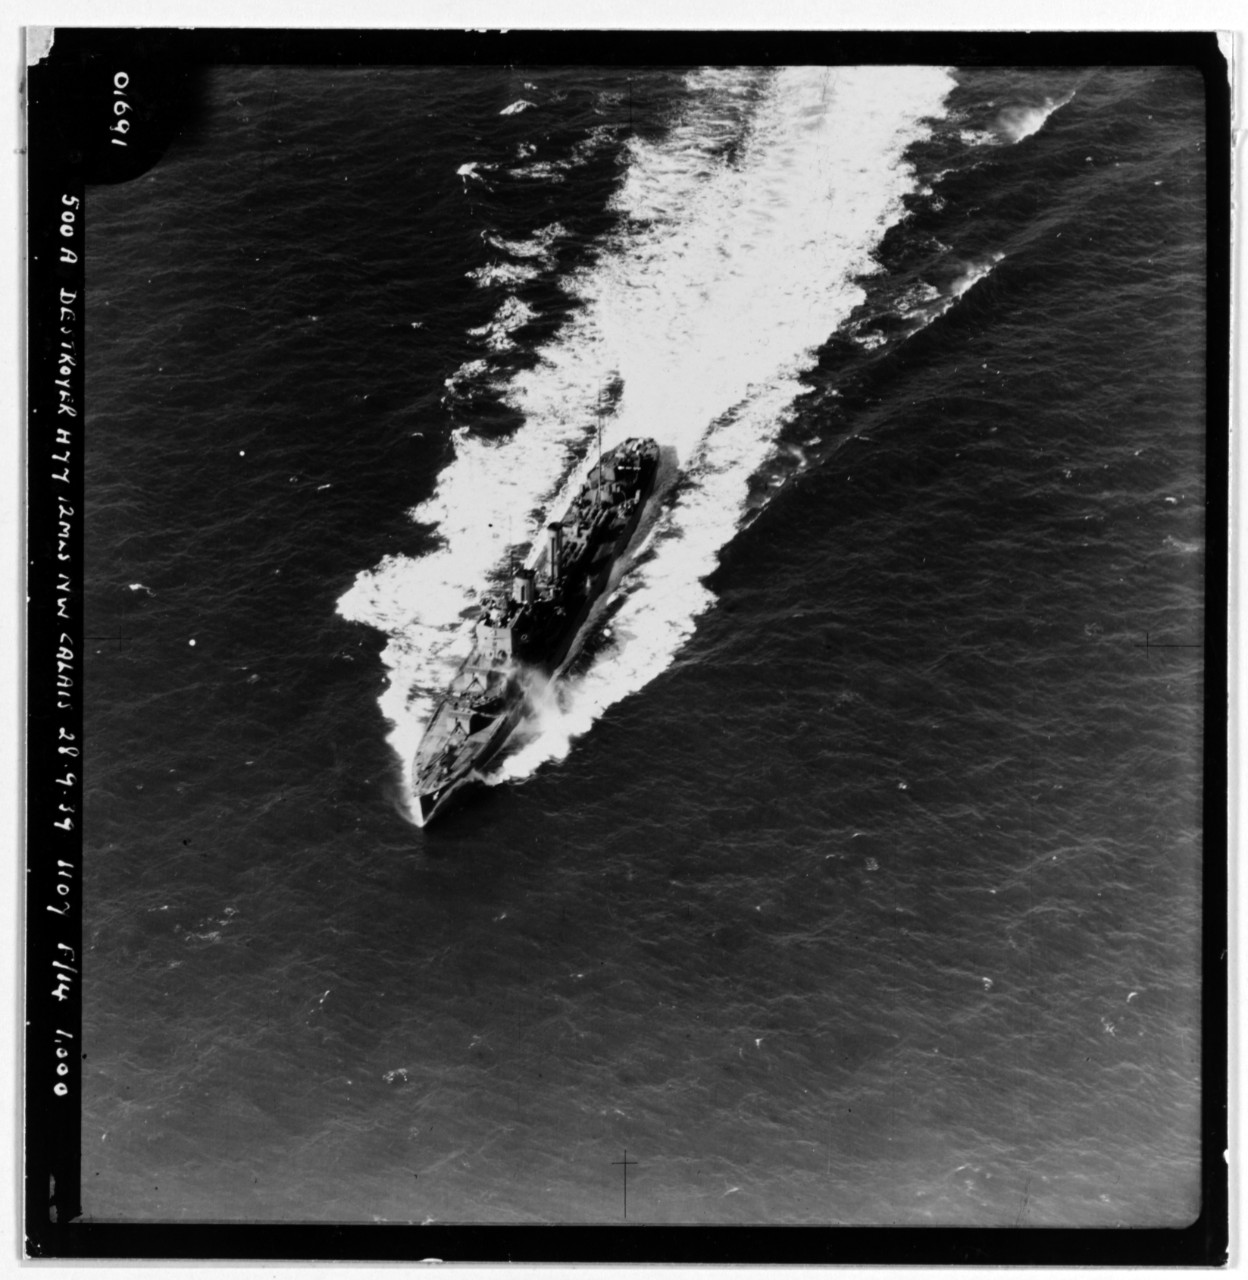 BOREAS (British destroyer, 1930-1952)